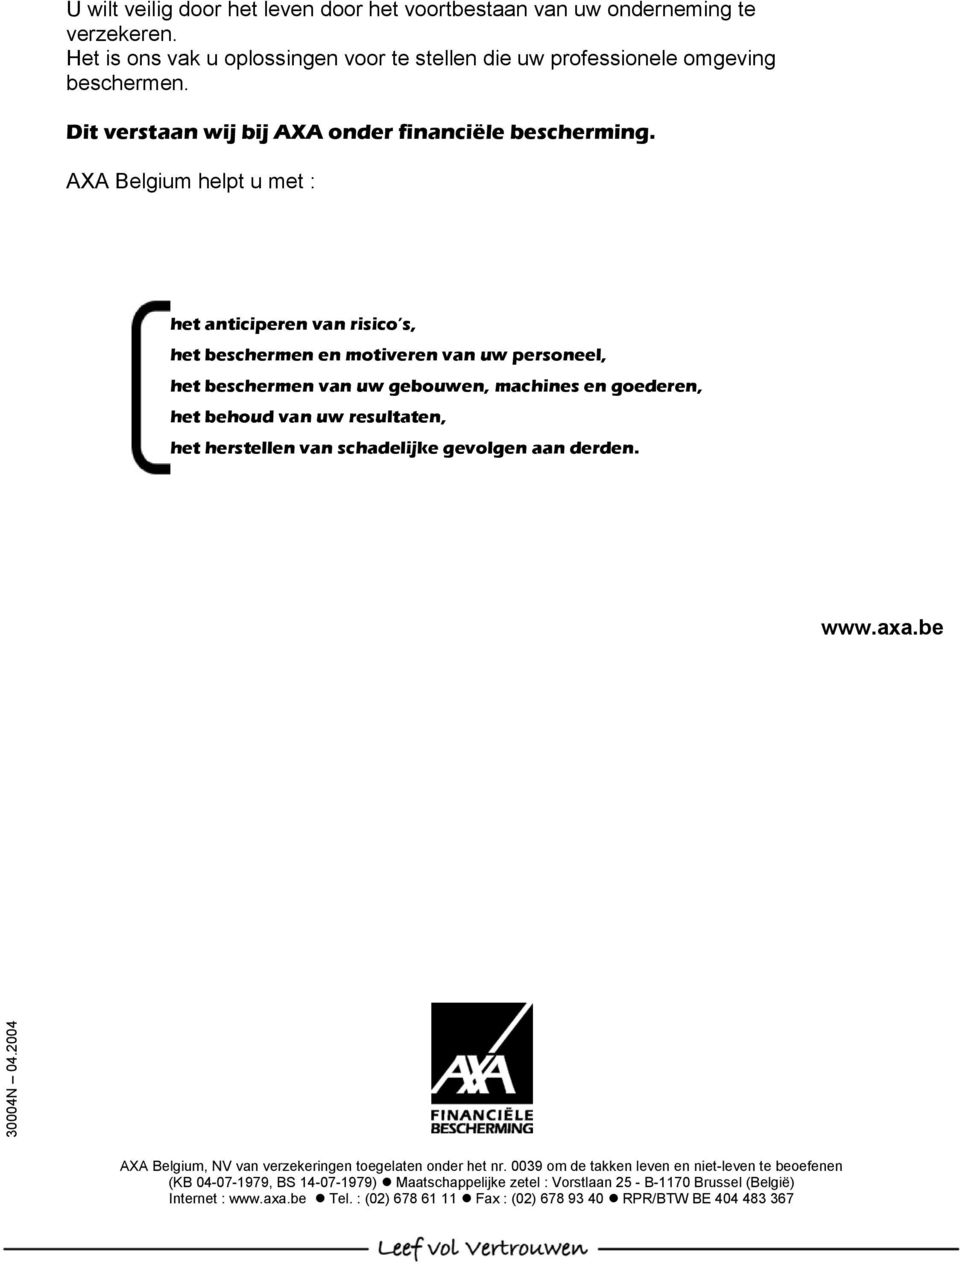 AXA Belgium helpt u met : het anticiperen van risico s, het beschermen en motiveren van uw personeel, het beschermen van uw gebouwen, machines en goederen, het behoud van uw resultaten, het